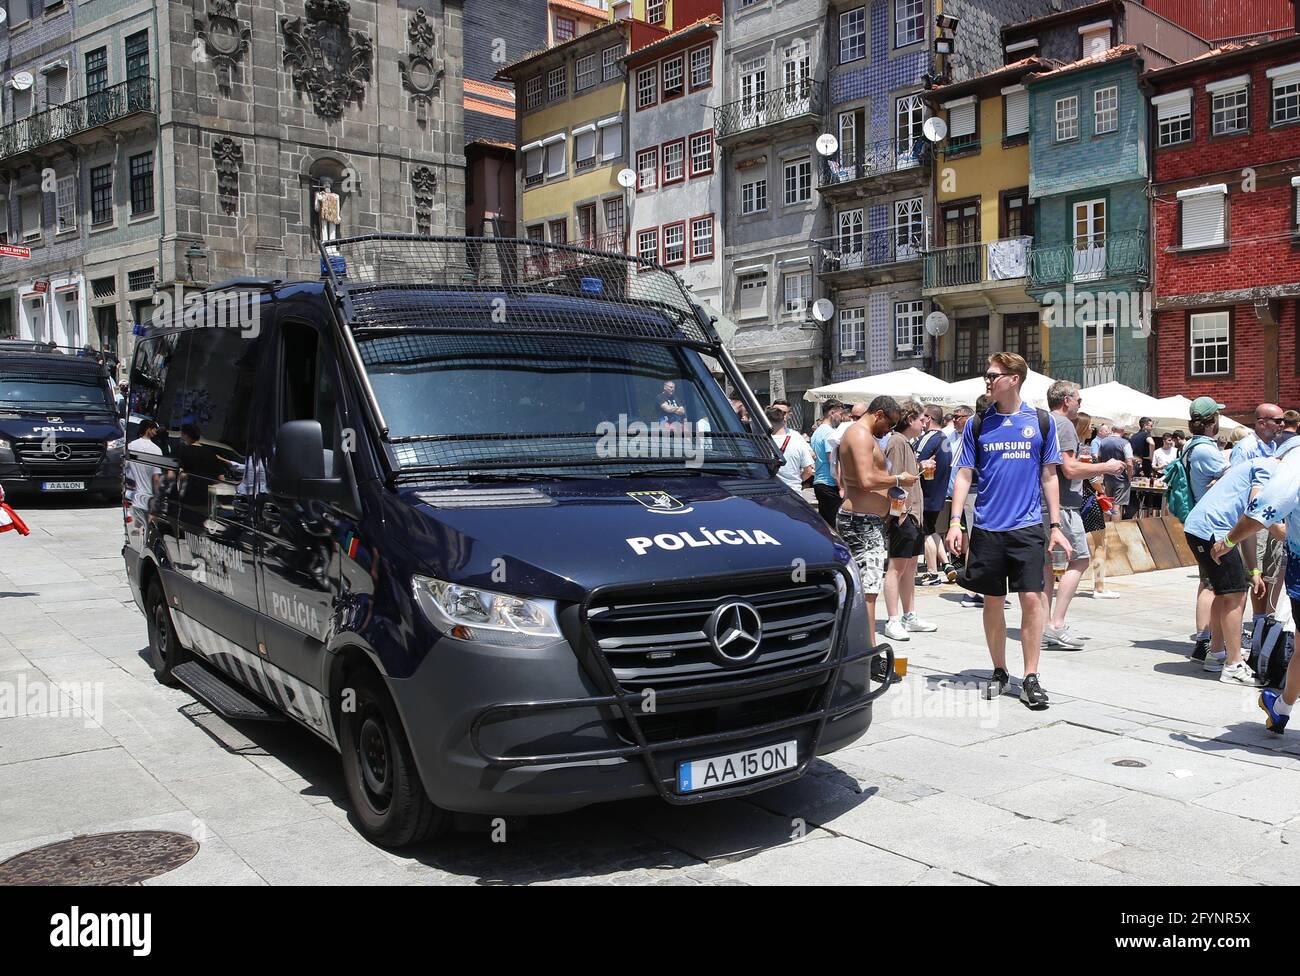 Porto, Portogallo. 29 maggio 2021. I furgoni della polizia girano la zona tenendo d'occhio i tifosi prima della partita della UEFA Champions League all'Estadio do Dragao, Porto. Il credito immagine dovrebbe essere: David Klein/Sportimage Credit: Sportimage/Alamy Live News Foto Stock